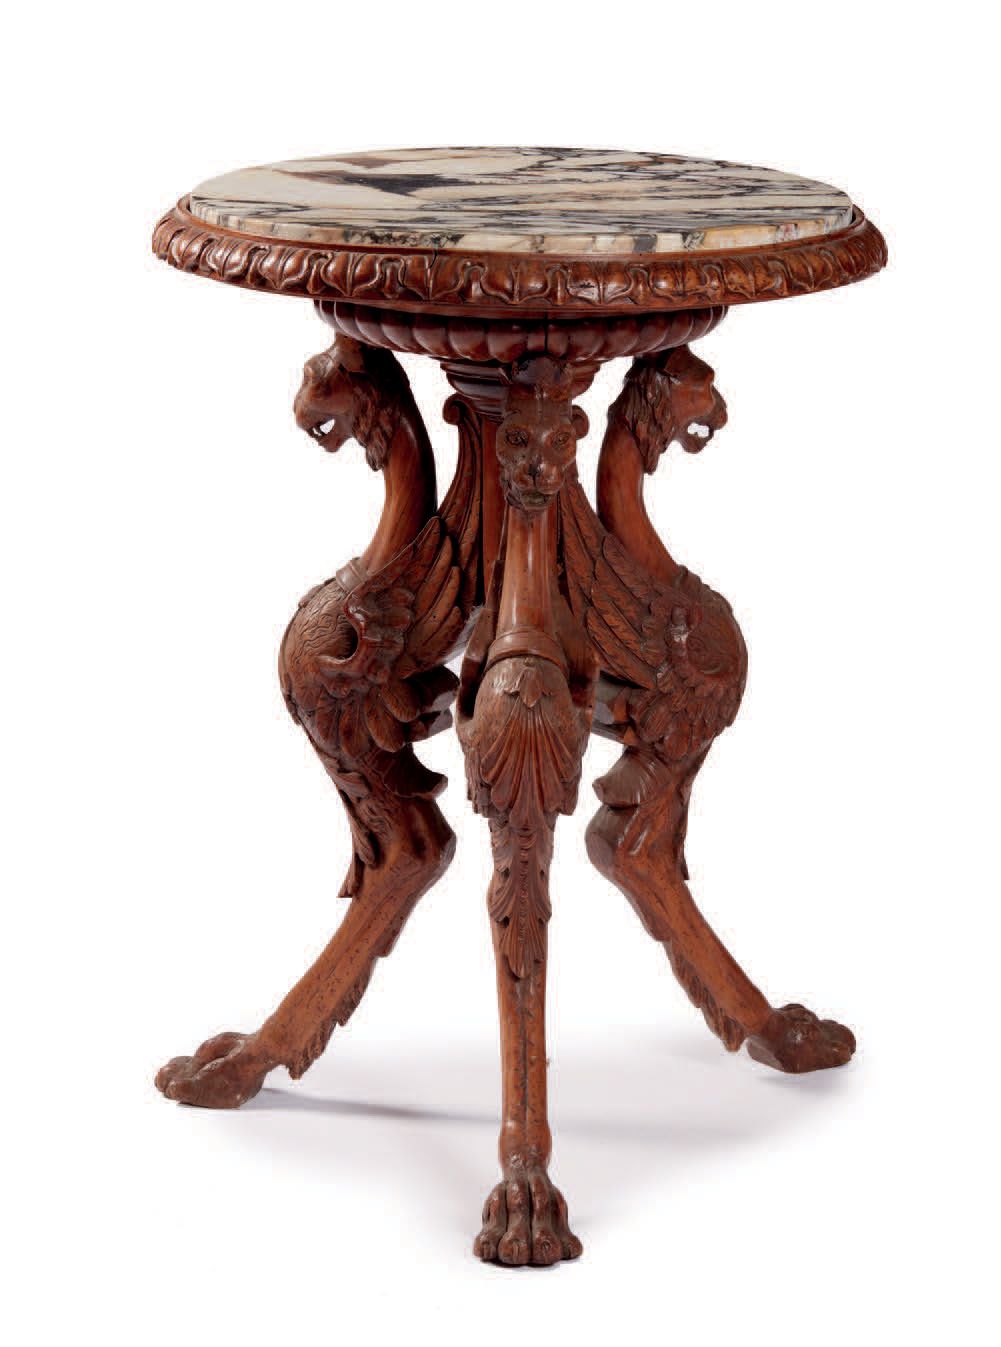 Null 三角形圆桌，大理石桌面，木质雕花桌腿，以狮鹫的形式装饰，狮鹫的翅膀连接到中央的支撑物上（破碎的大理石，修复）
Petite table ronde t&hellip;